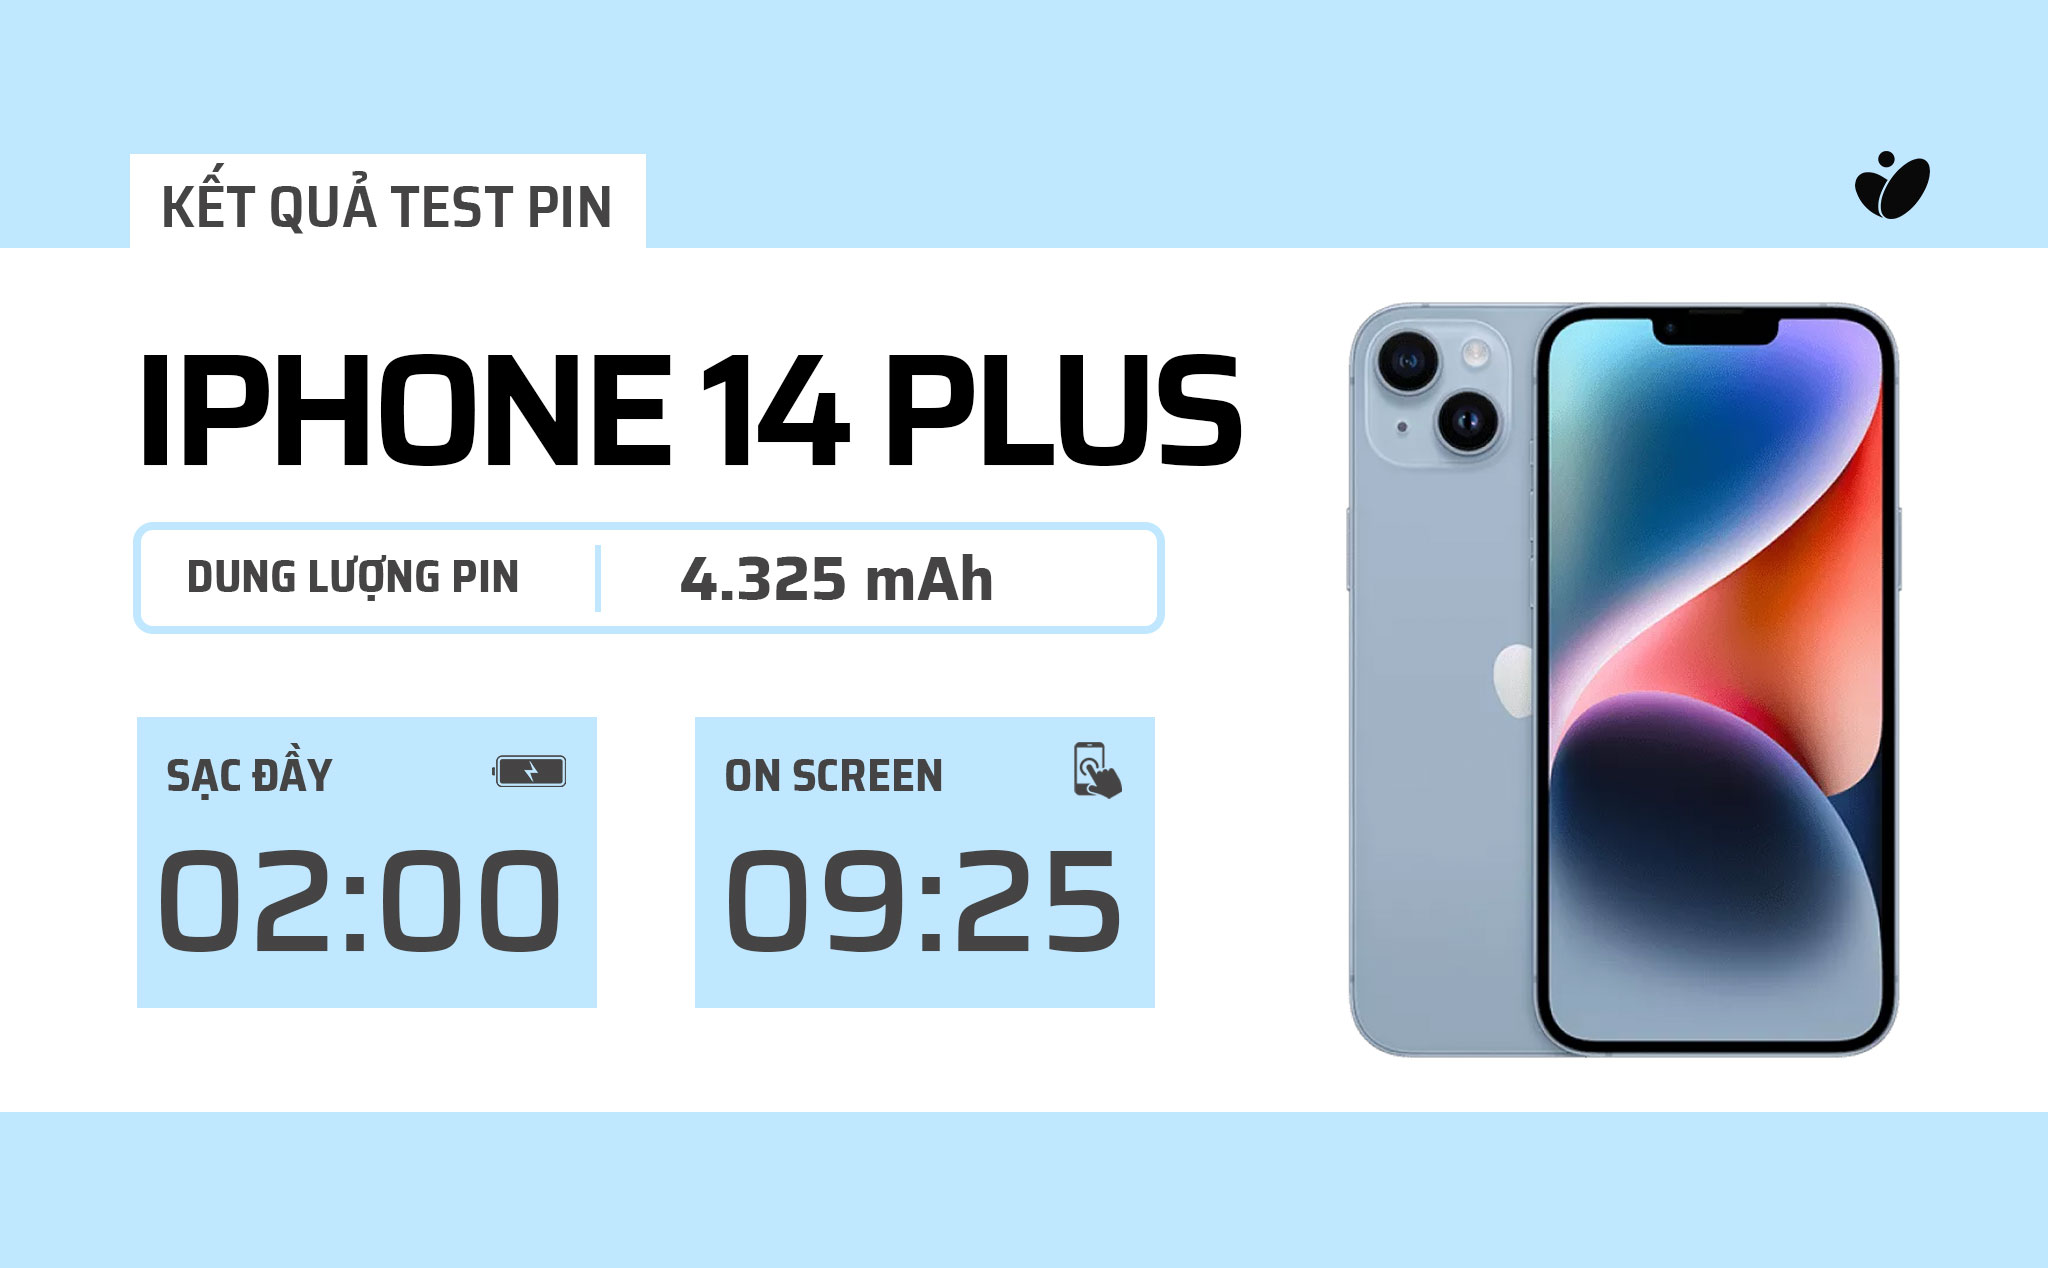 Tóm tắt 1 ngày dùng pin iPhone 14 Plus: 9 tiếng 25 phút on screen, hơn cả 14 Pro Max